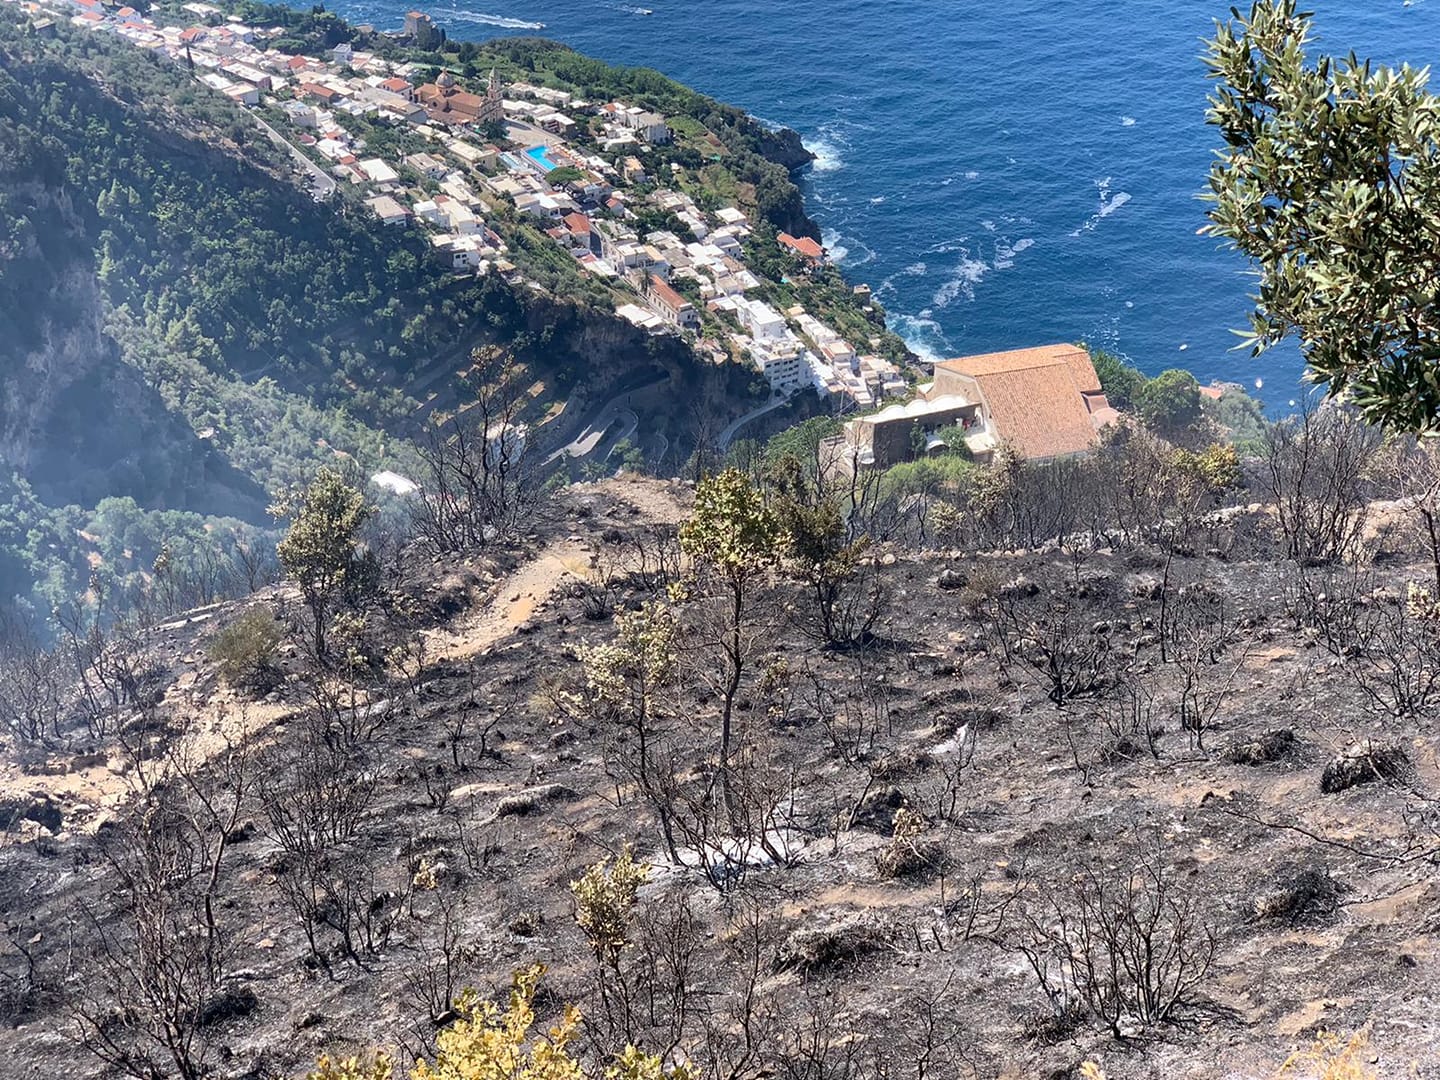 Incendio a Positano: chiuso il Sentiero degli Dei. Circolazione limitata sulla statale Amalfitana